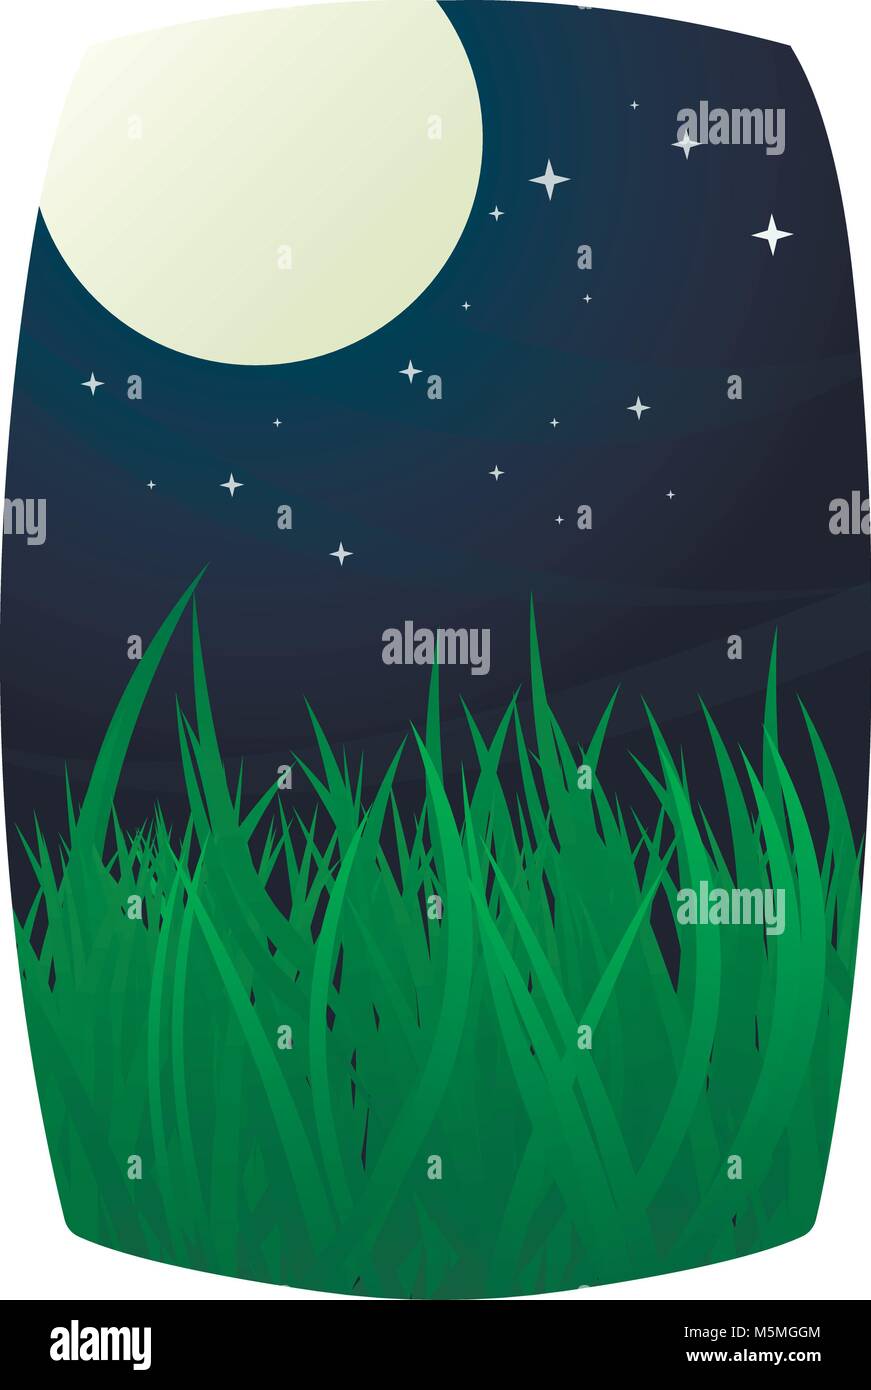 Vollmond und Sternenhimmel mit Gras Wiese im Vordergrund. Stock Vektor